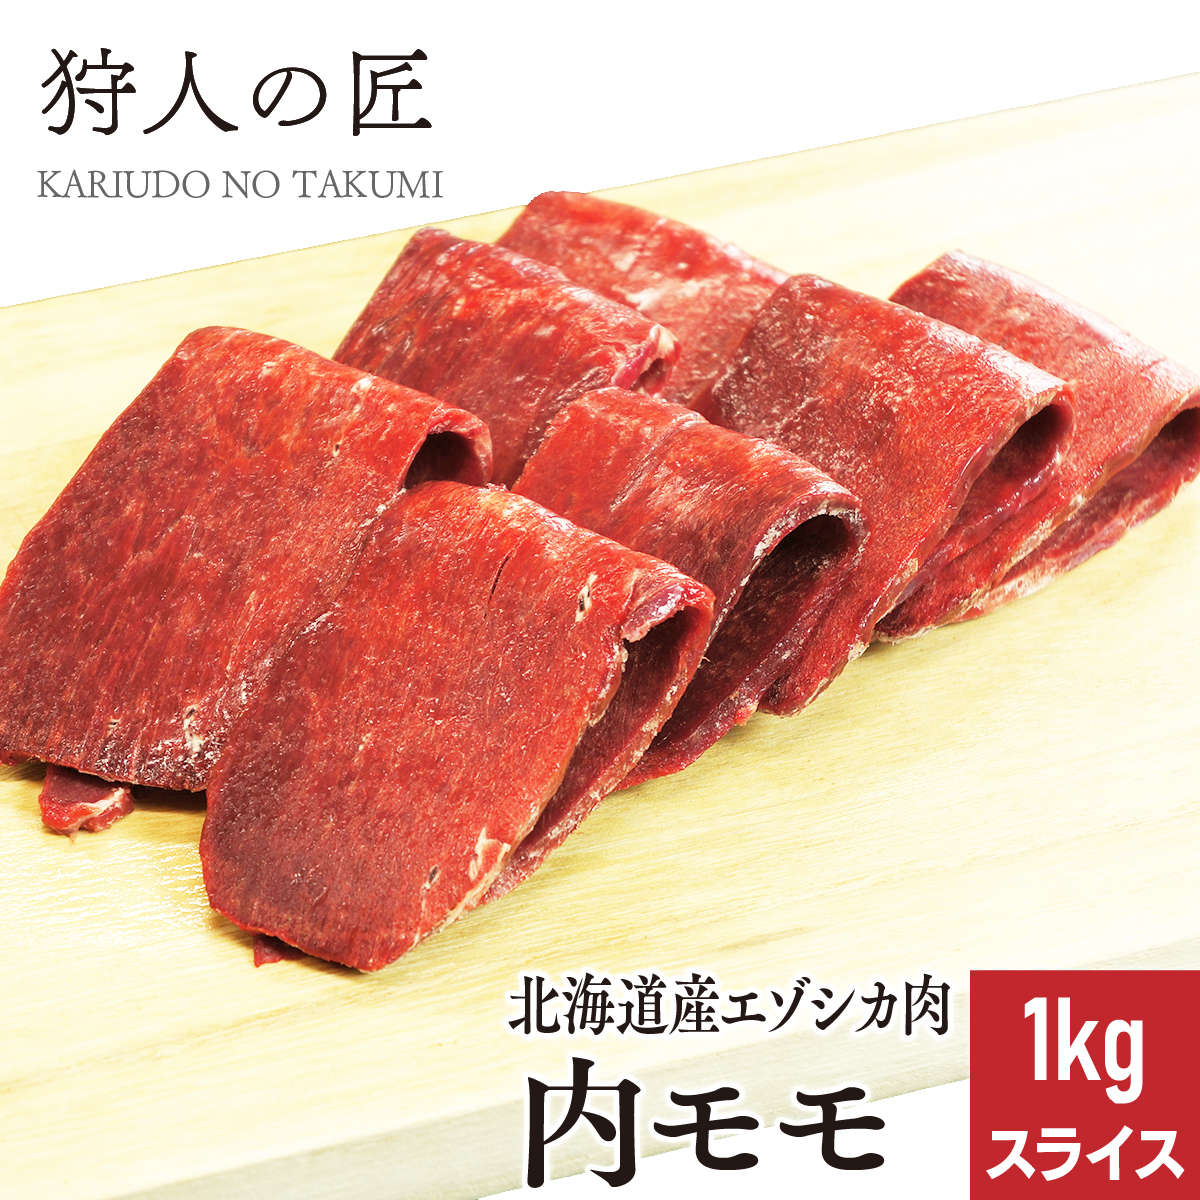 エゾ鹿肉 内モモ肉 1kg (スライス)